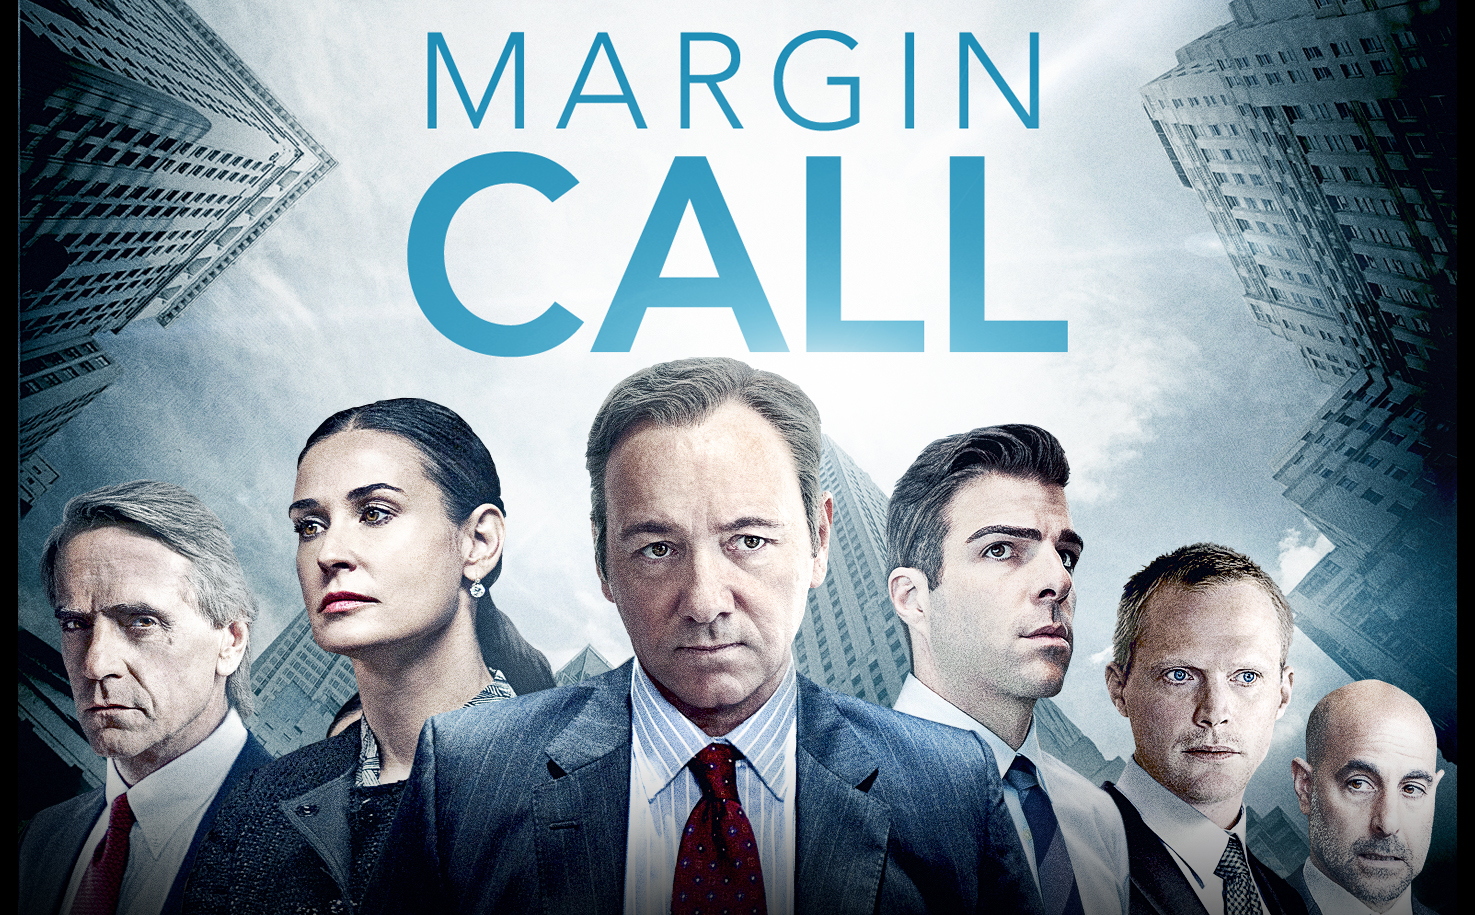 مارجین کال (Margin call)